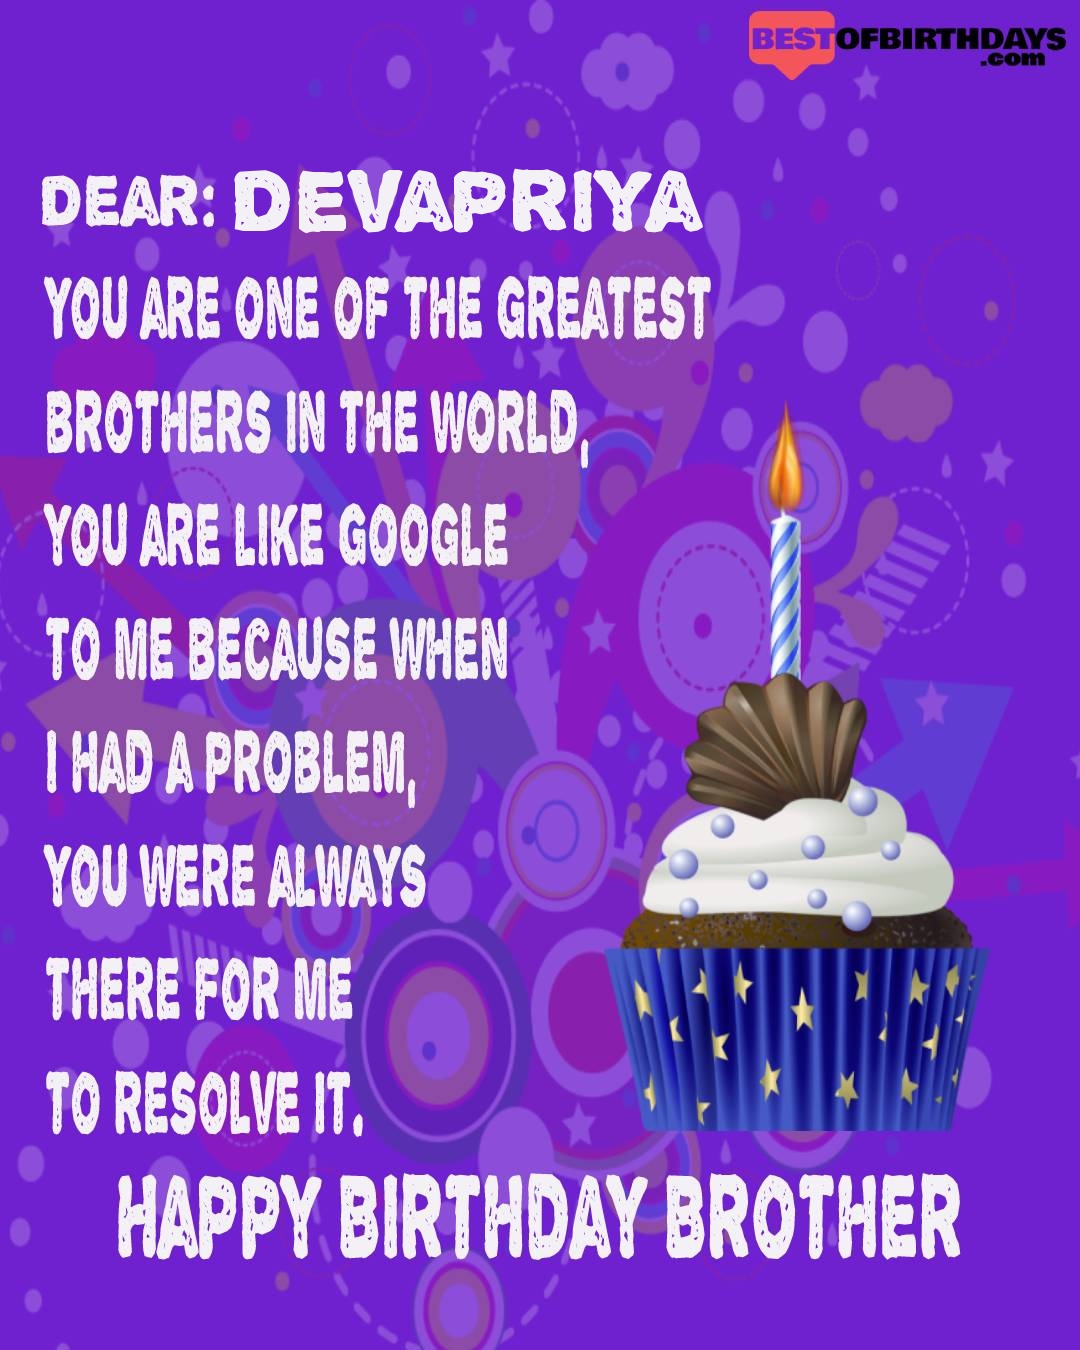 Happy birthday devapriya bhai brother bro